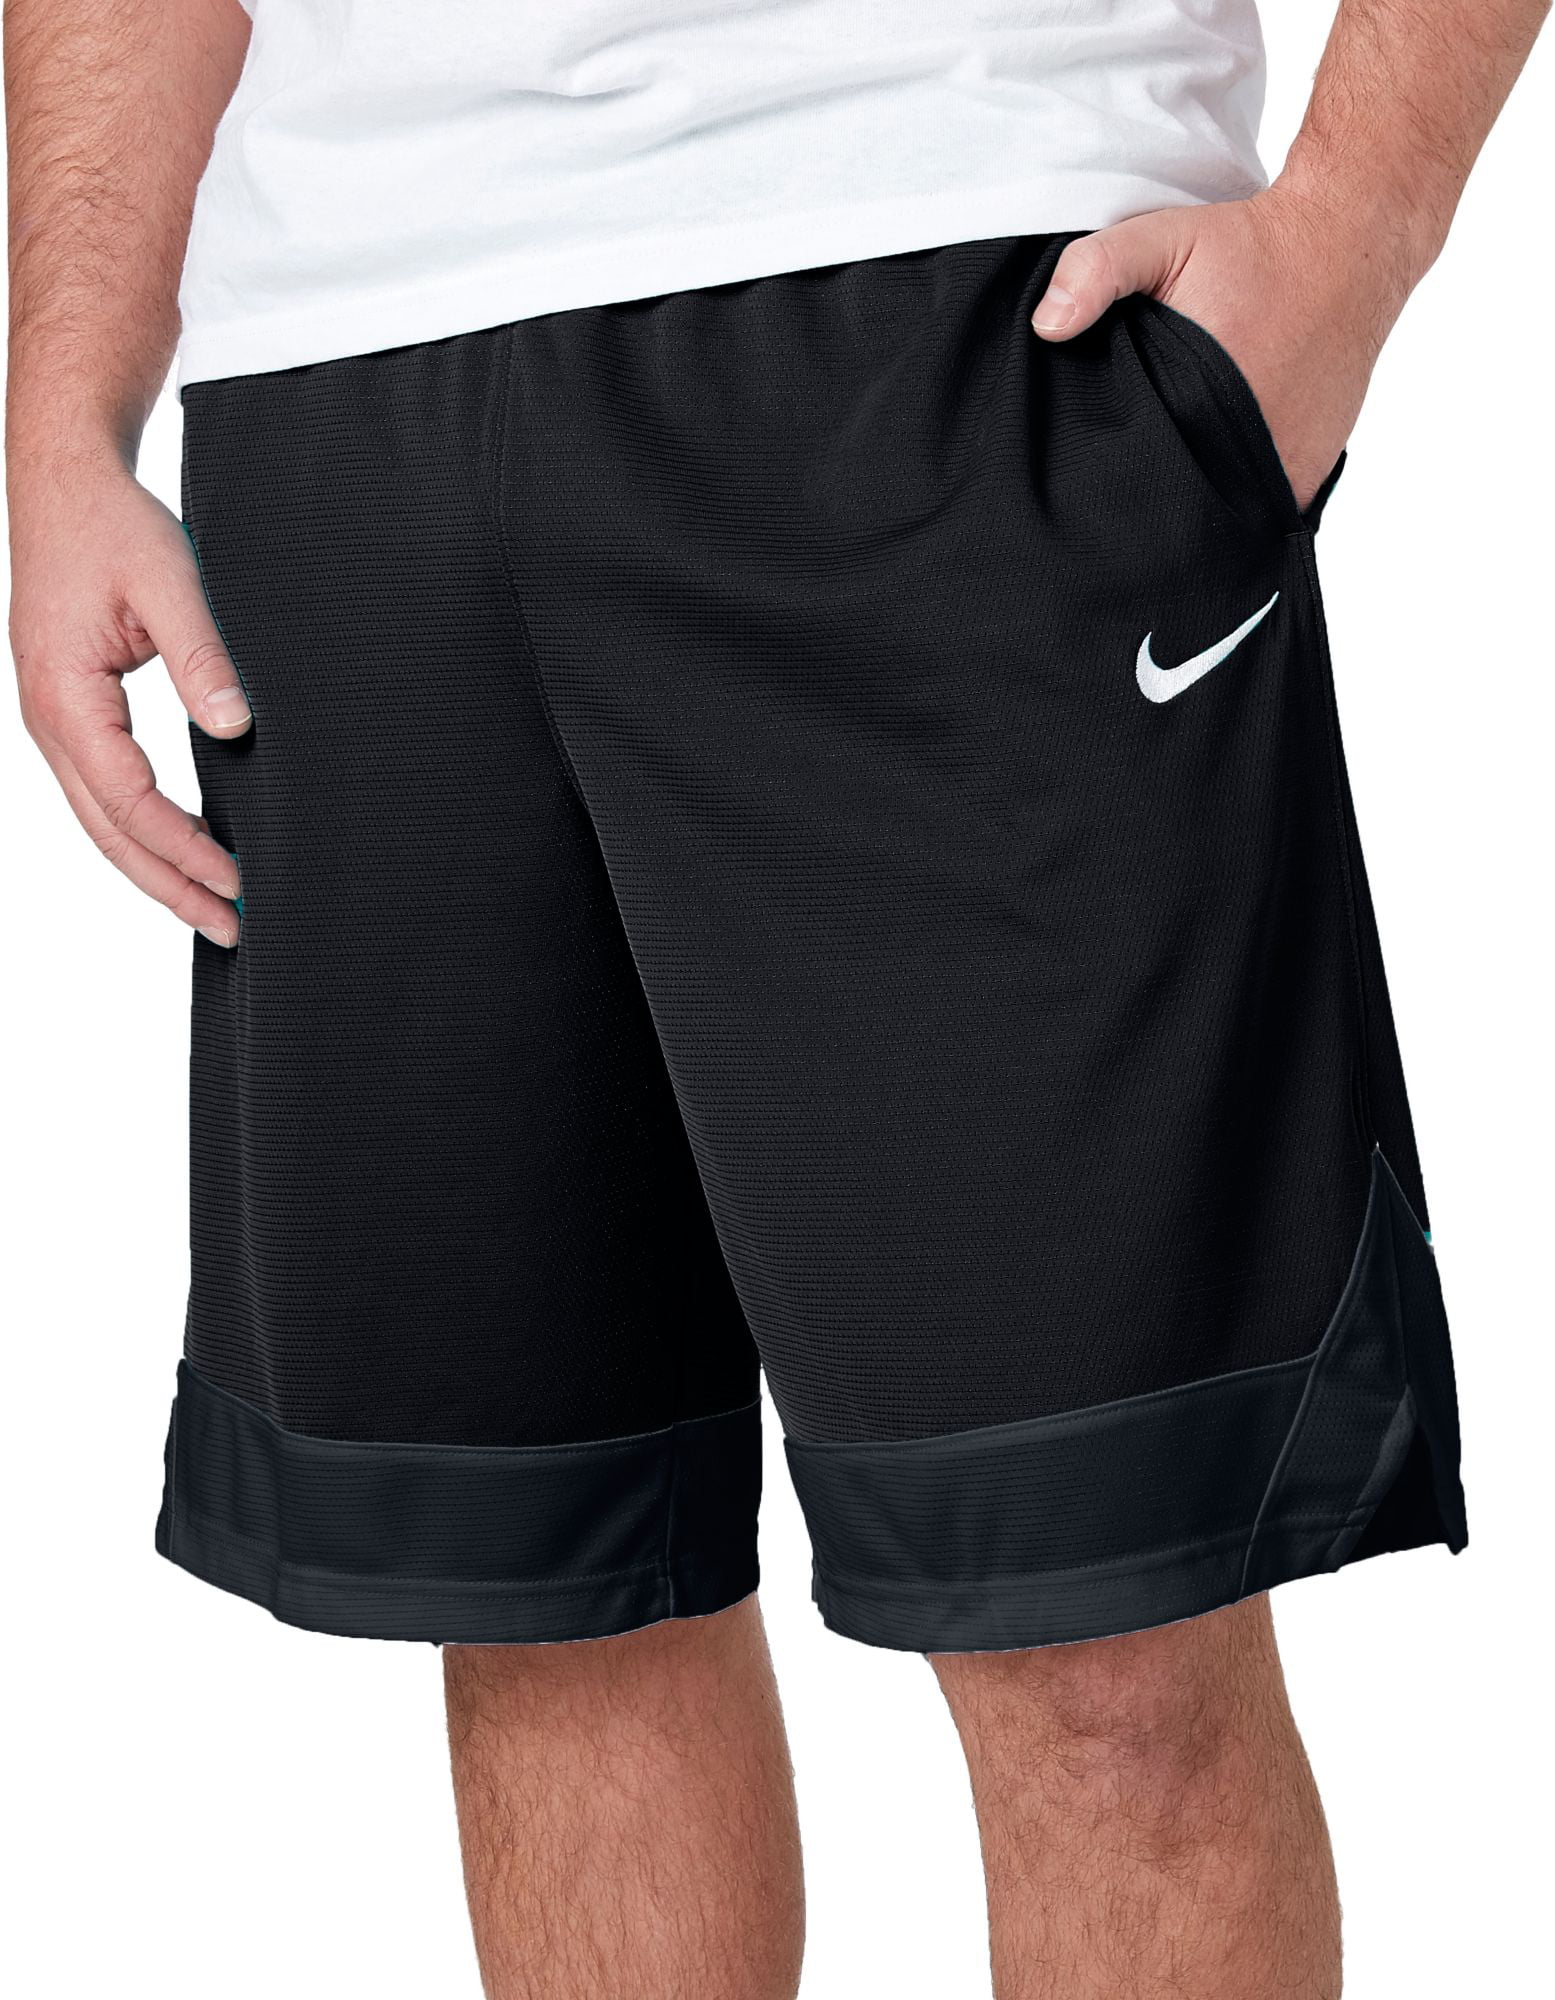 Nike Dri-FIT Icon Basketball Shorts - Black - AJ3914-010